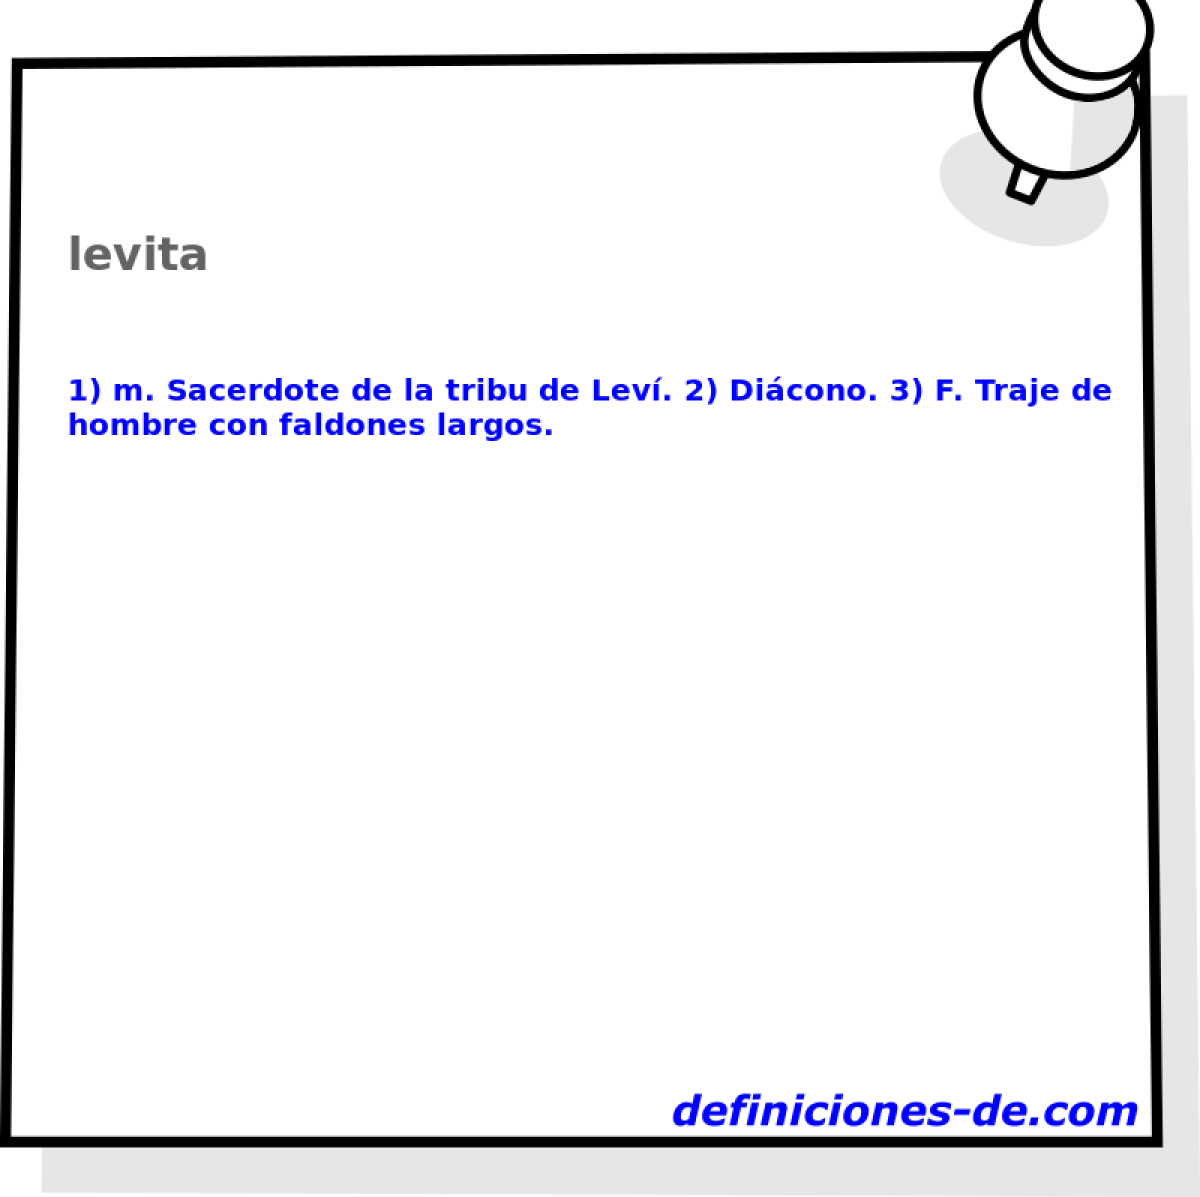 levita 